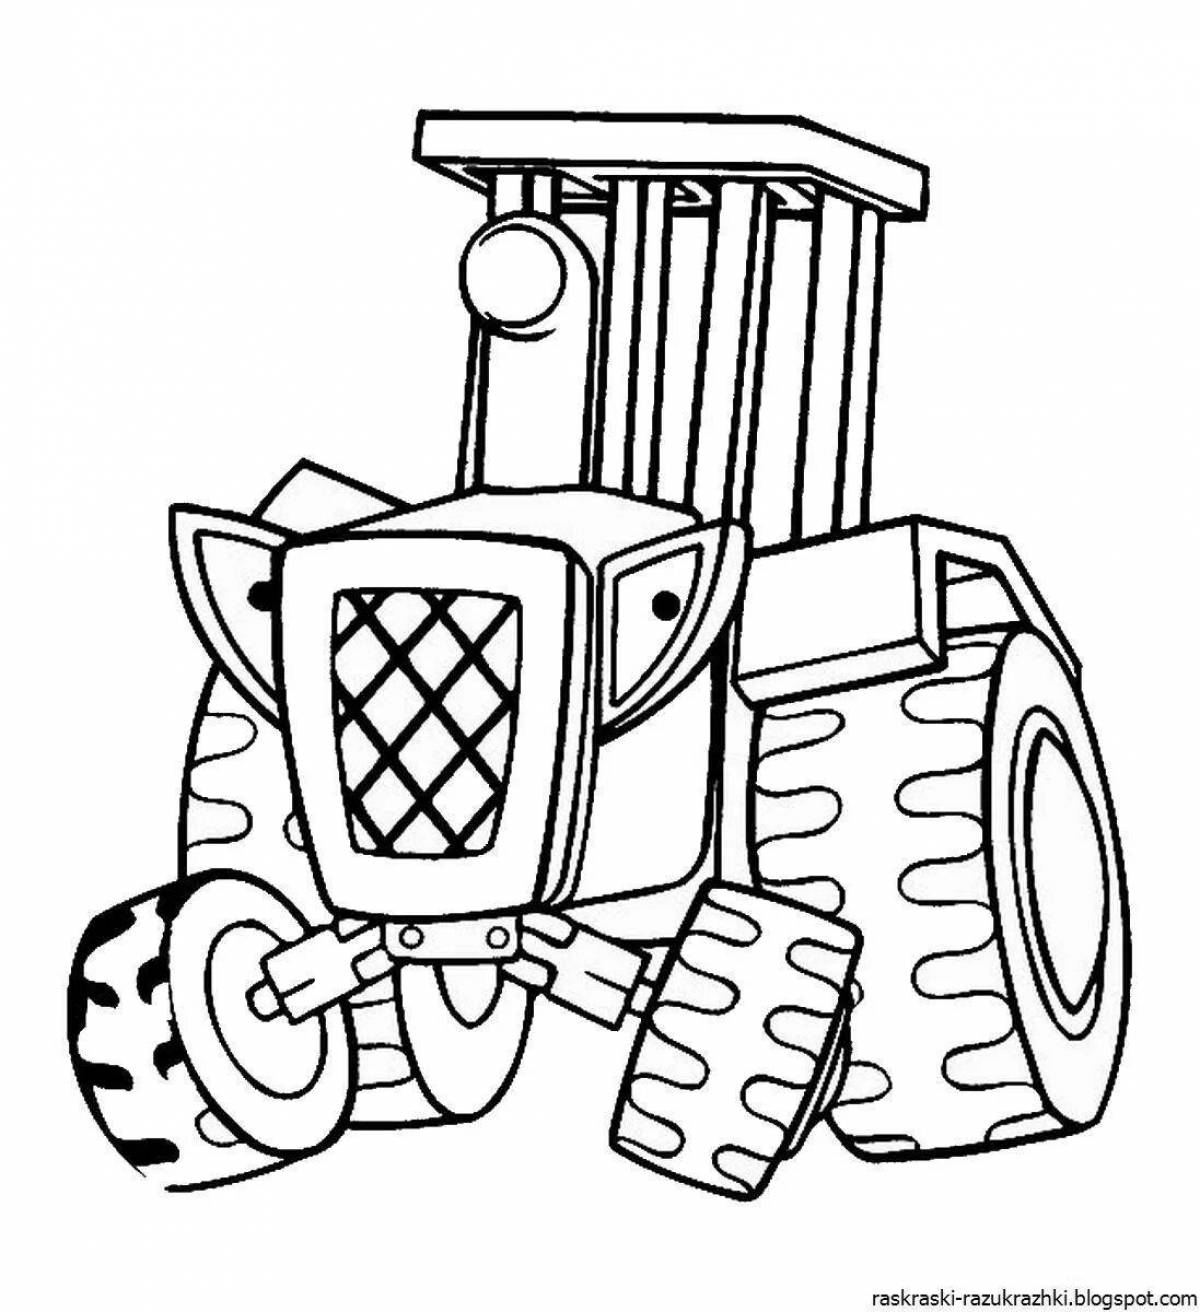 Привлекательный рисунок трактора